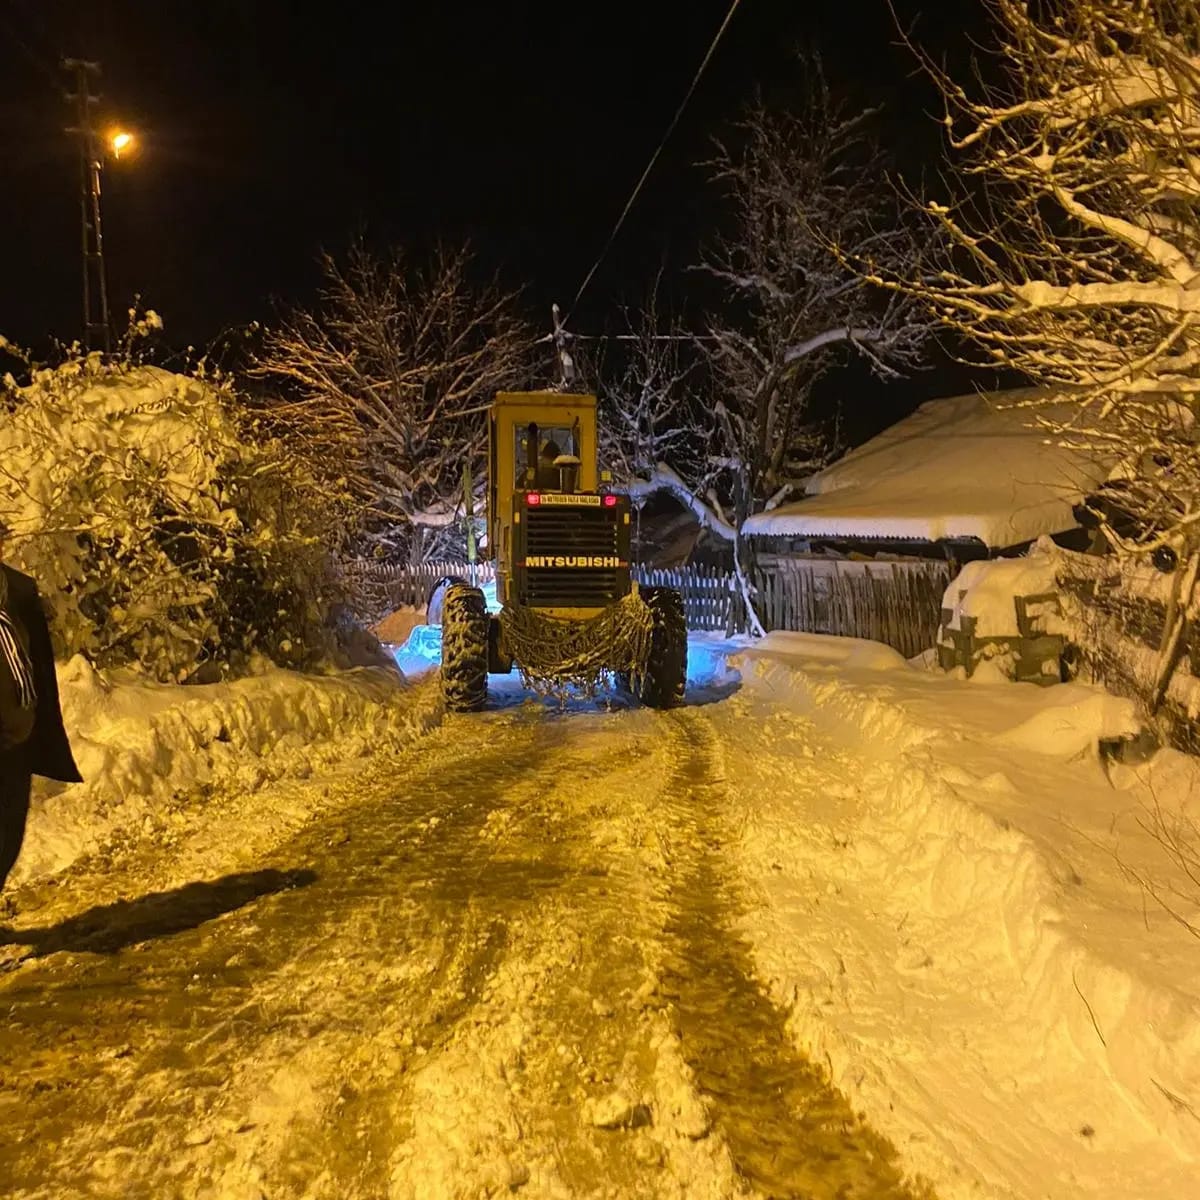 İl Özel İdaresi Karla mücadele ekiplerimiz iş makinelerimiz ile kapalı köy yollarını ulaşıma açmak için özverili bir şekilde aralıksız çalışmaktadır.